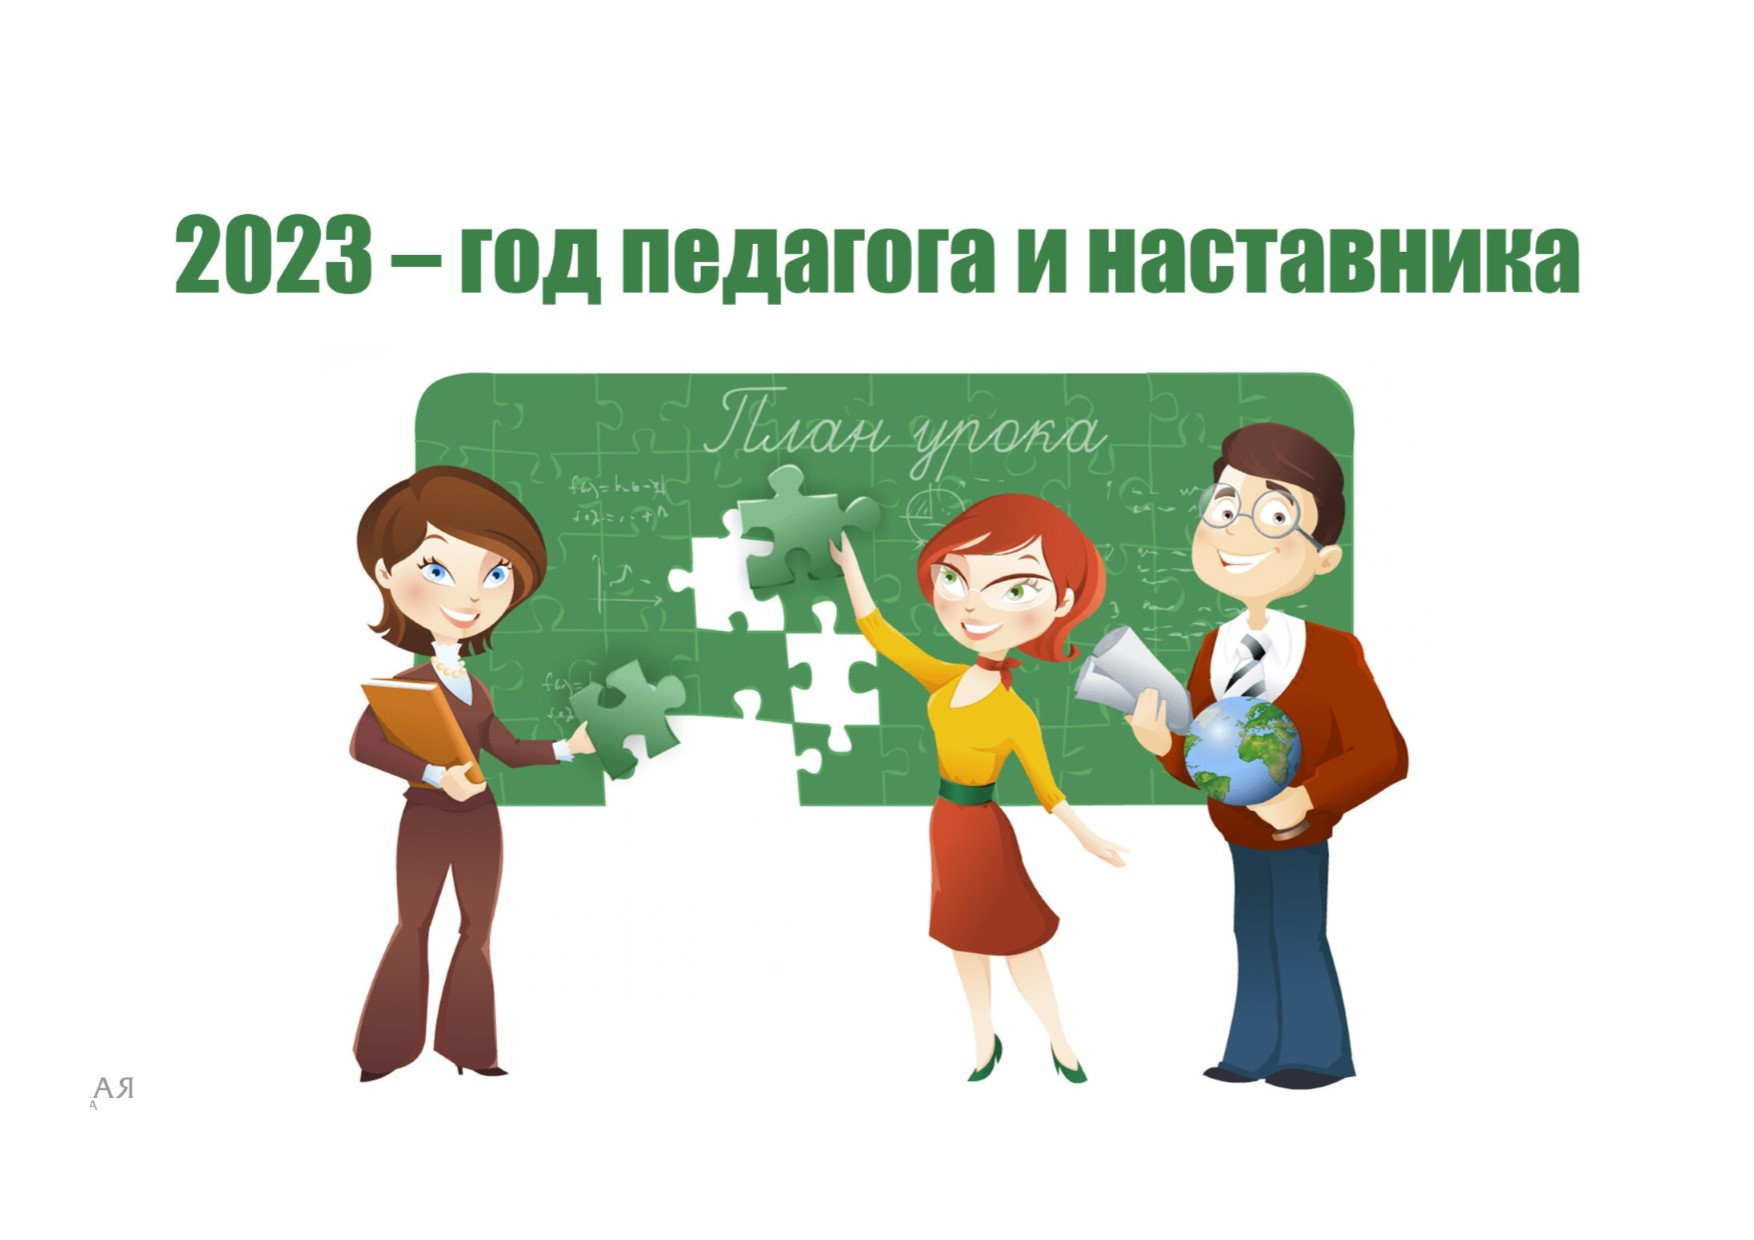 Культурно-досуговые учреждения района присоединились к общероссийским онлайн-акциям, посвященным Дню защитника Отечества